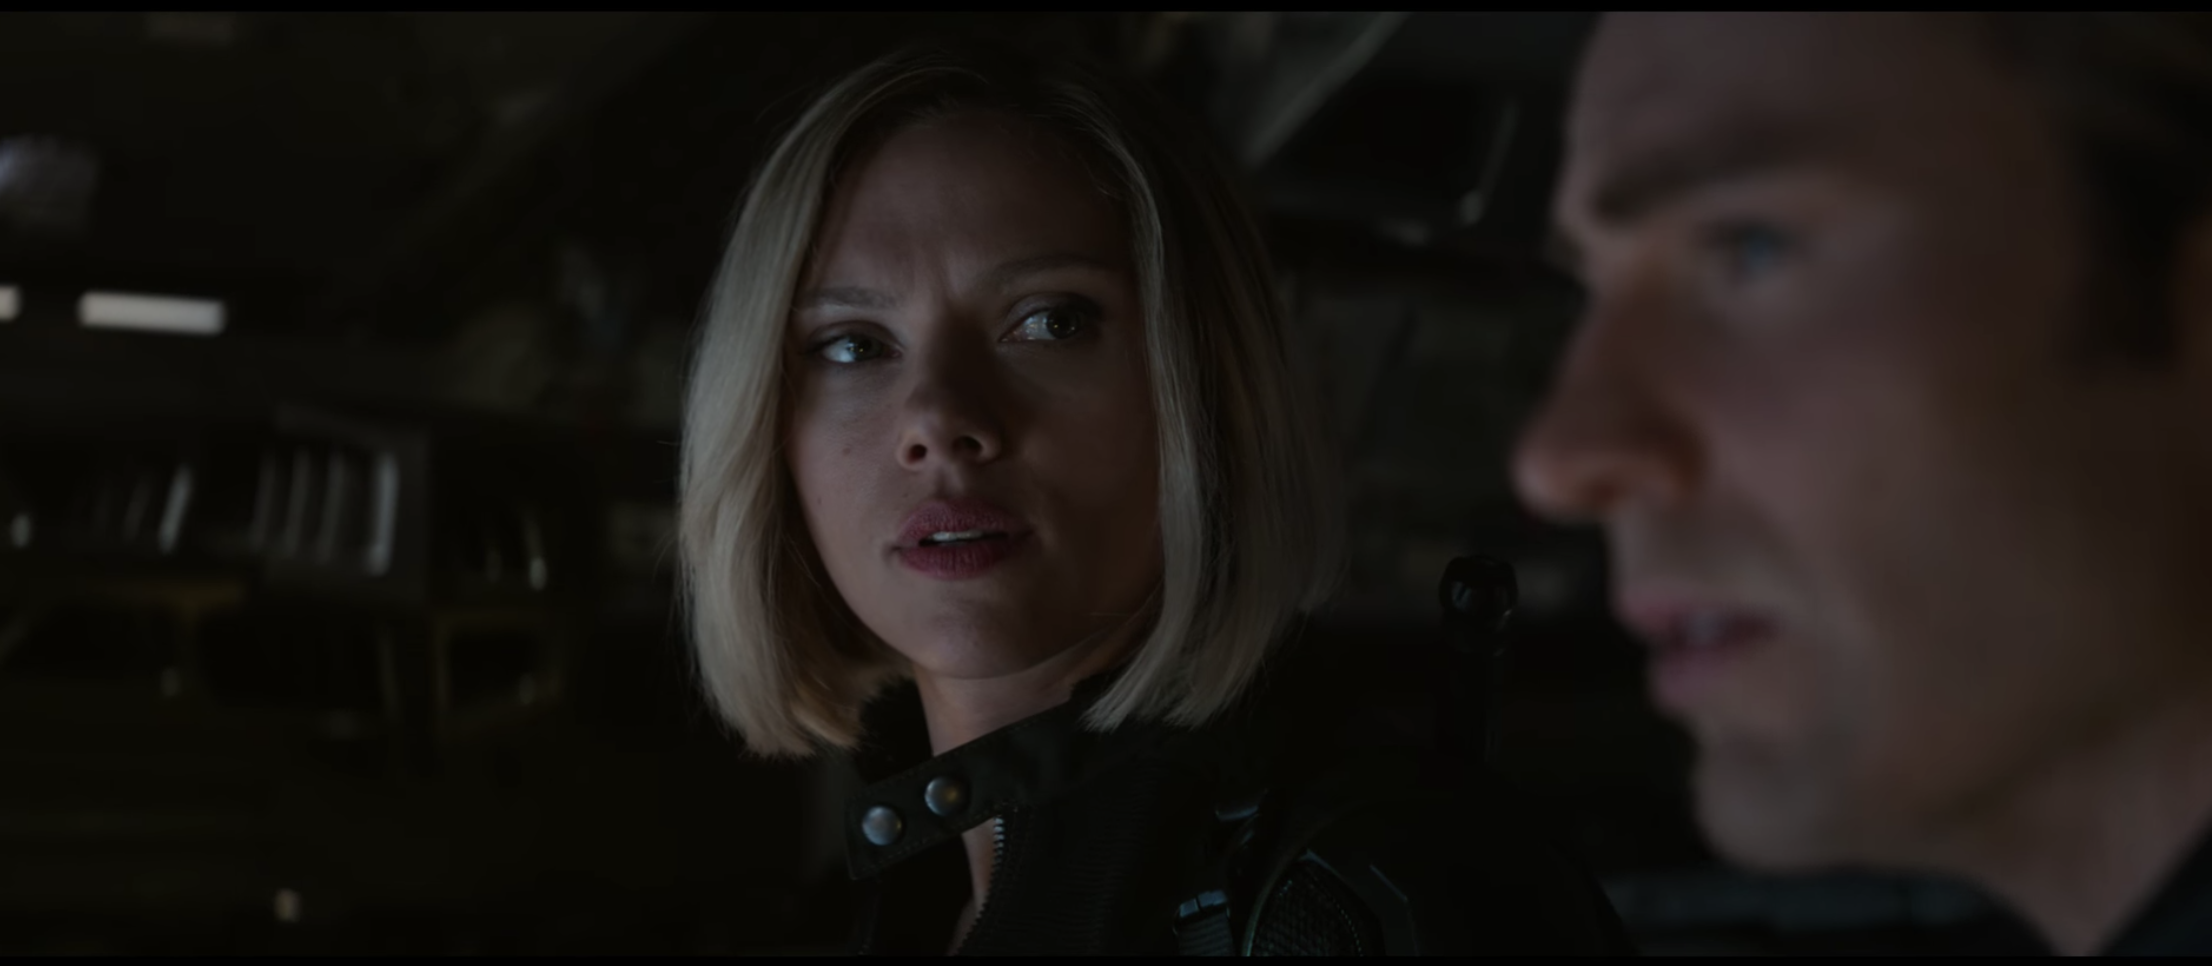 Scarlett Johansson as Black Widow in Avengers: Endgame trailer